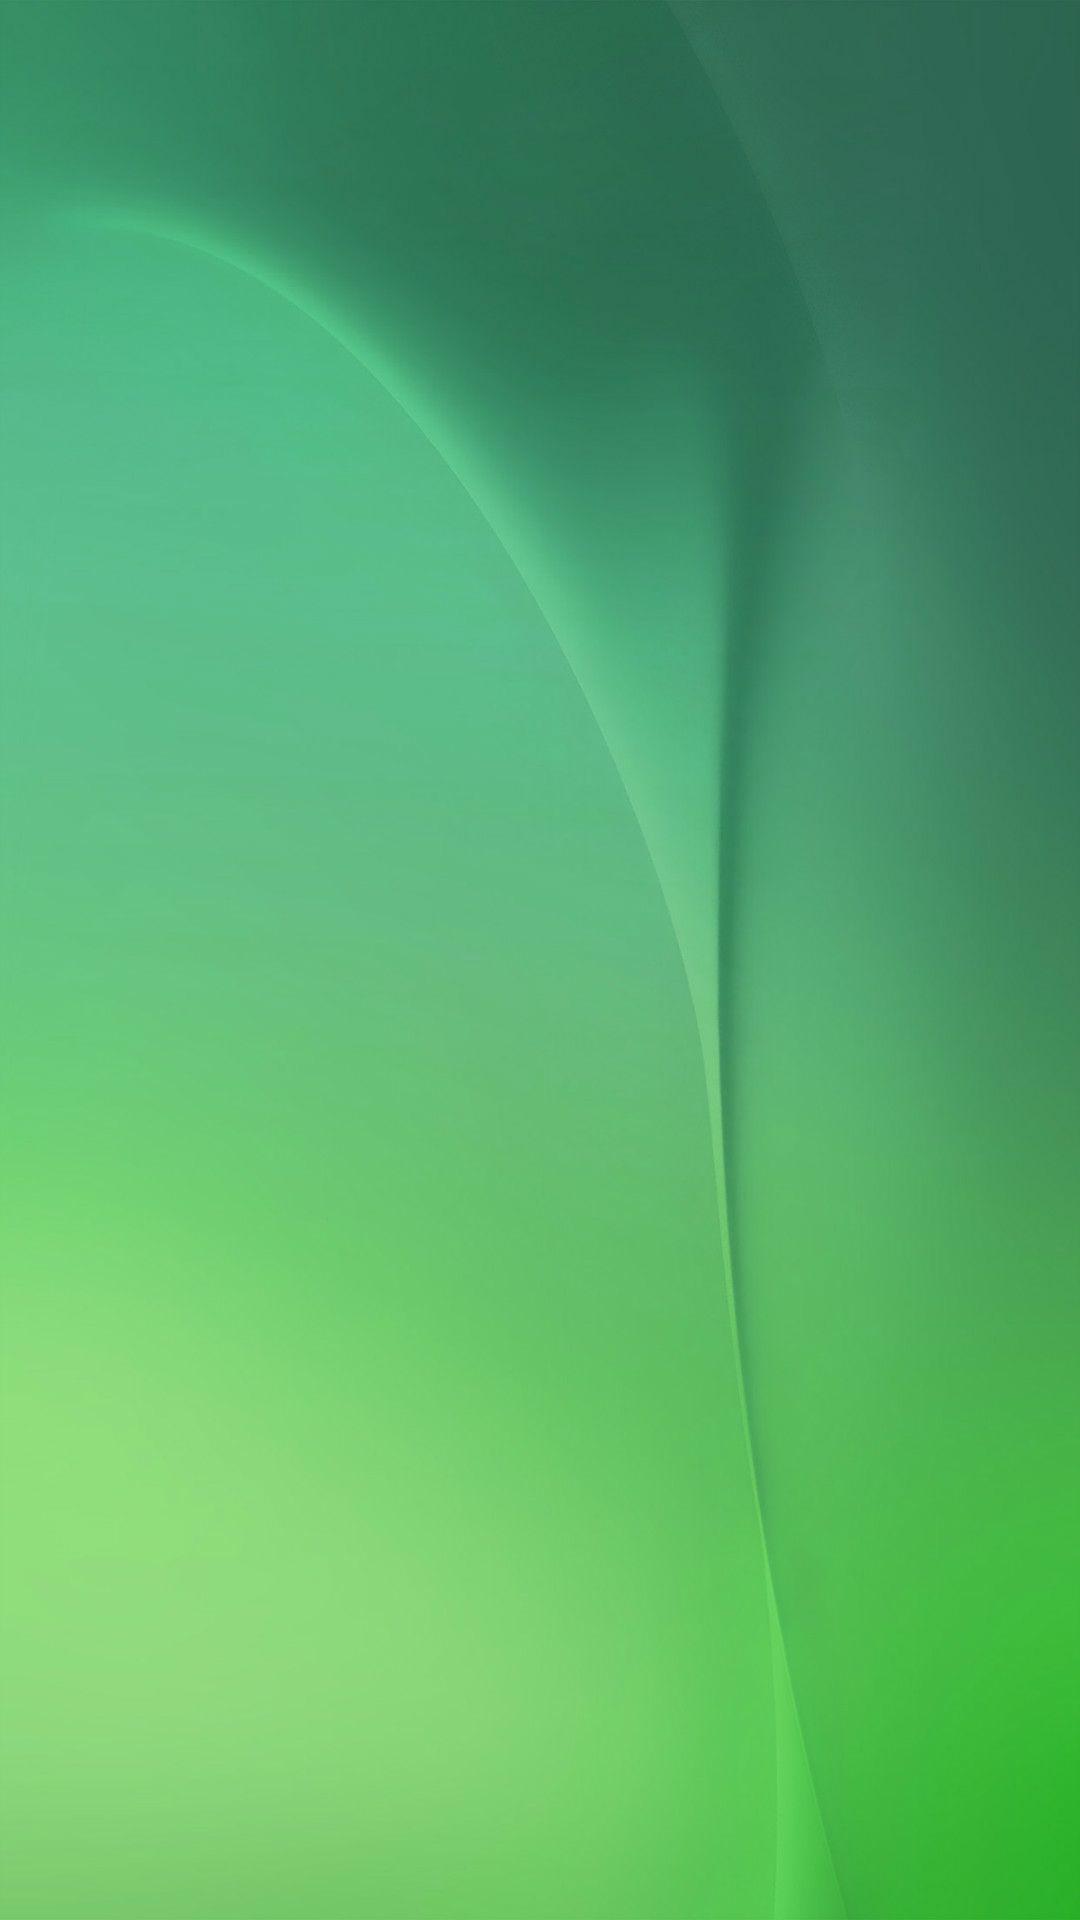 Deep Ocean Abstract Digital Soft Green Pattern IPhone Wallpaper